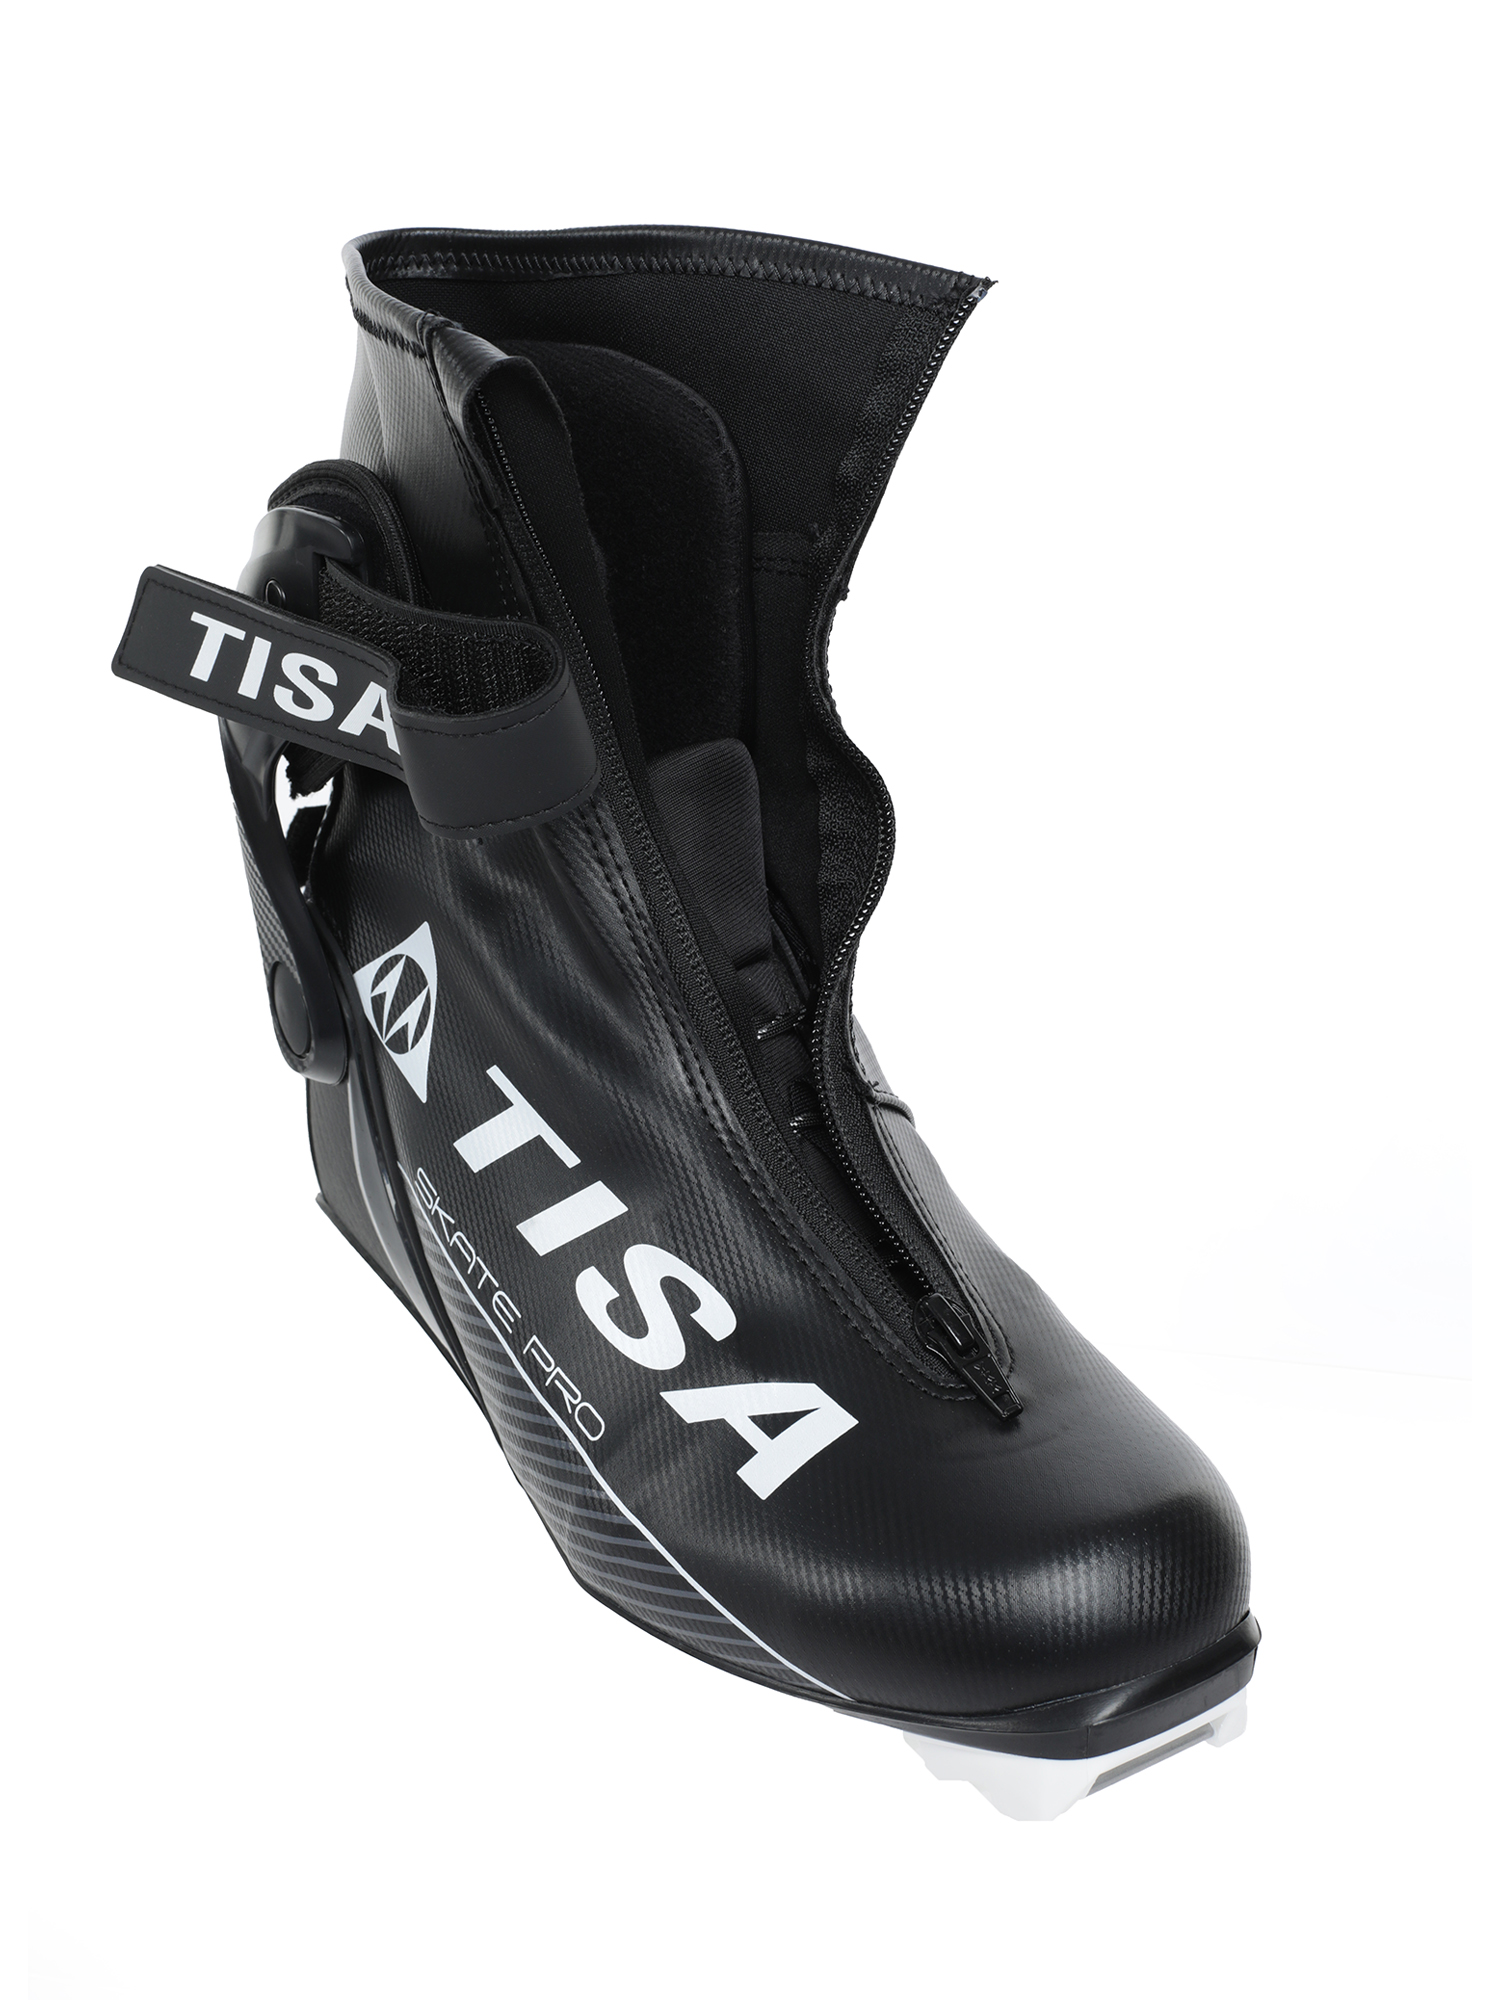 Ботинки лыжные TISA Pro Skate NNN